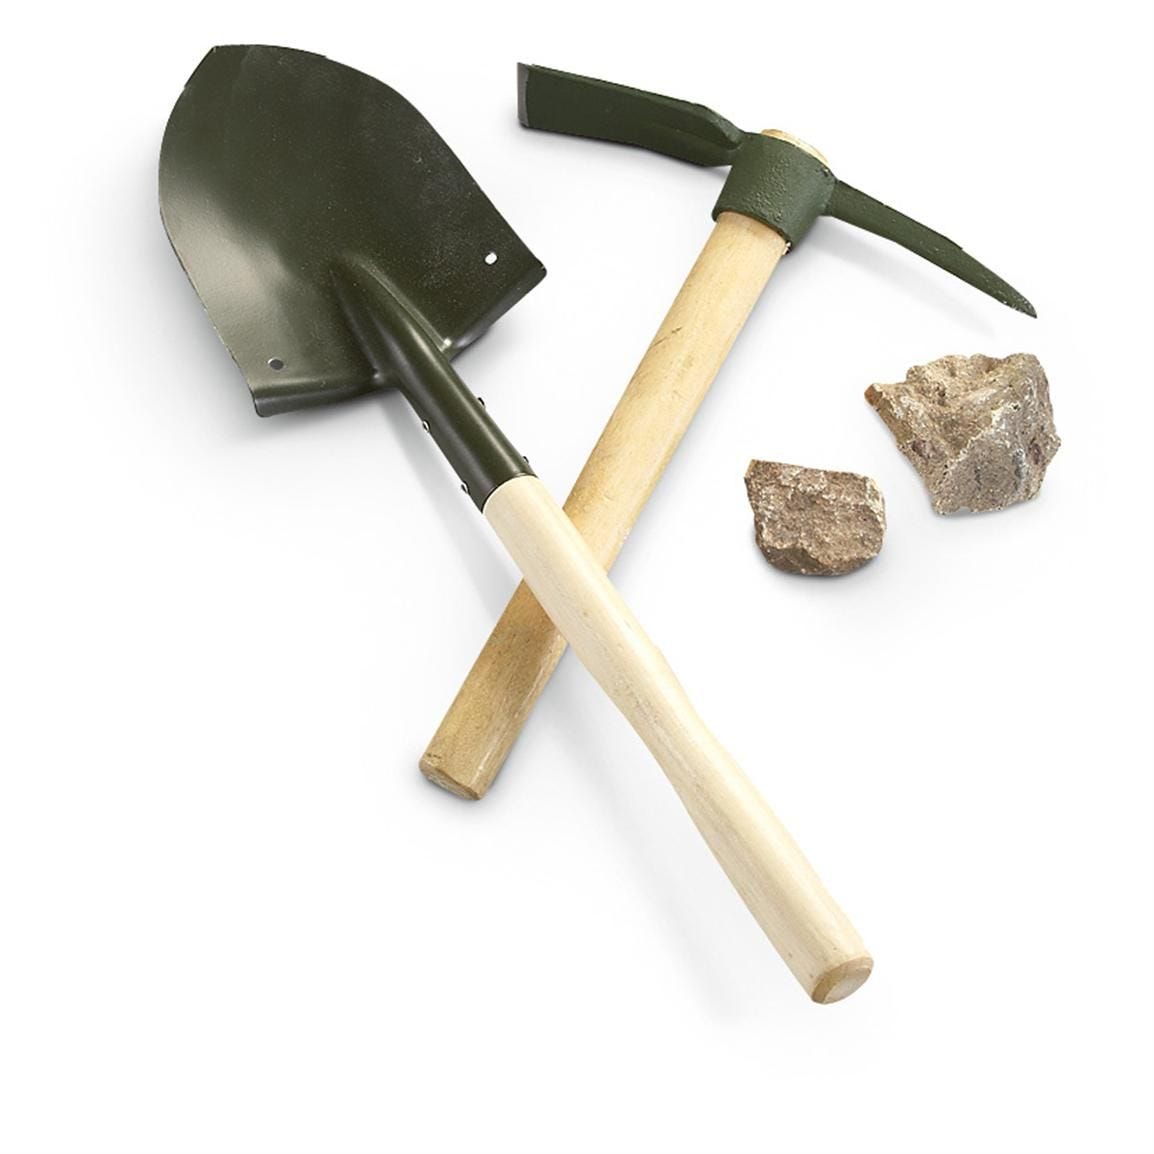 GENERAL: Picks and shovels | Shovel, Garden trowel, Spade shovel